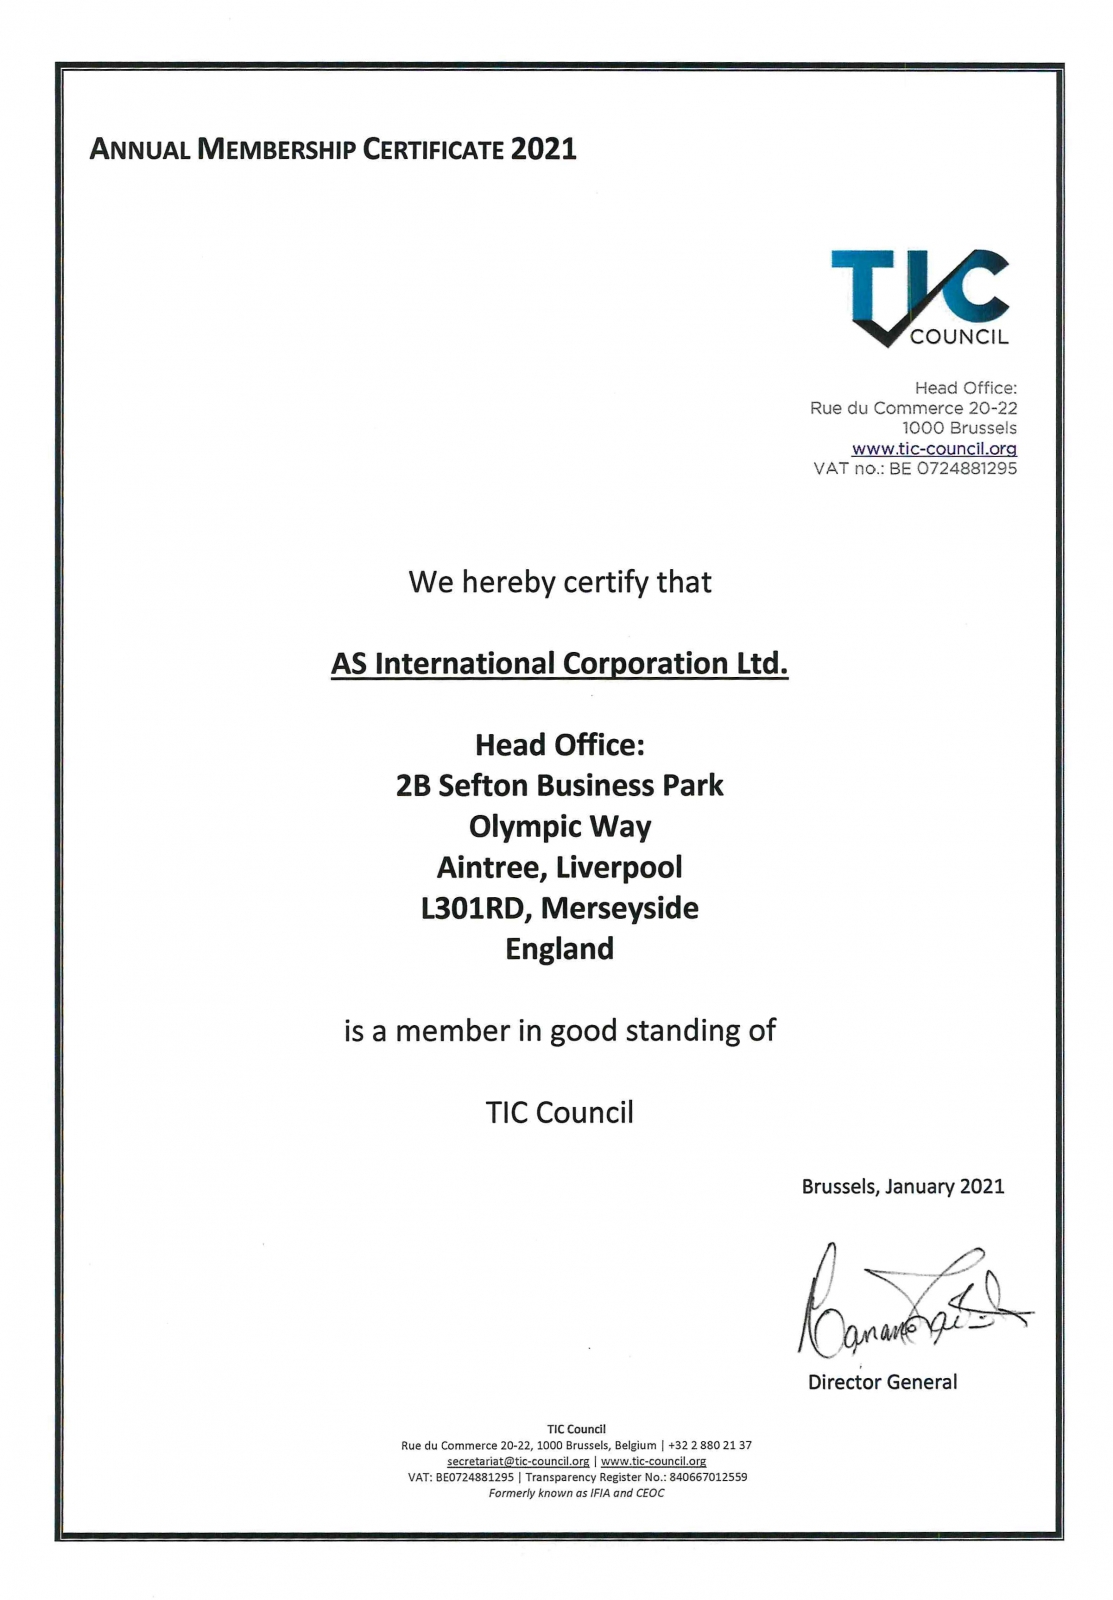 TIC Council Membership Certificate